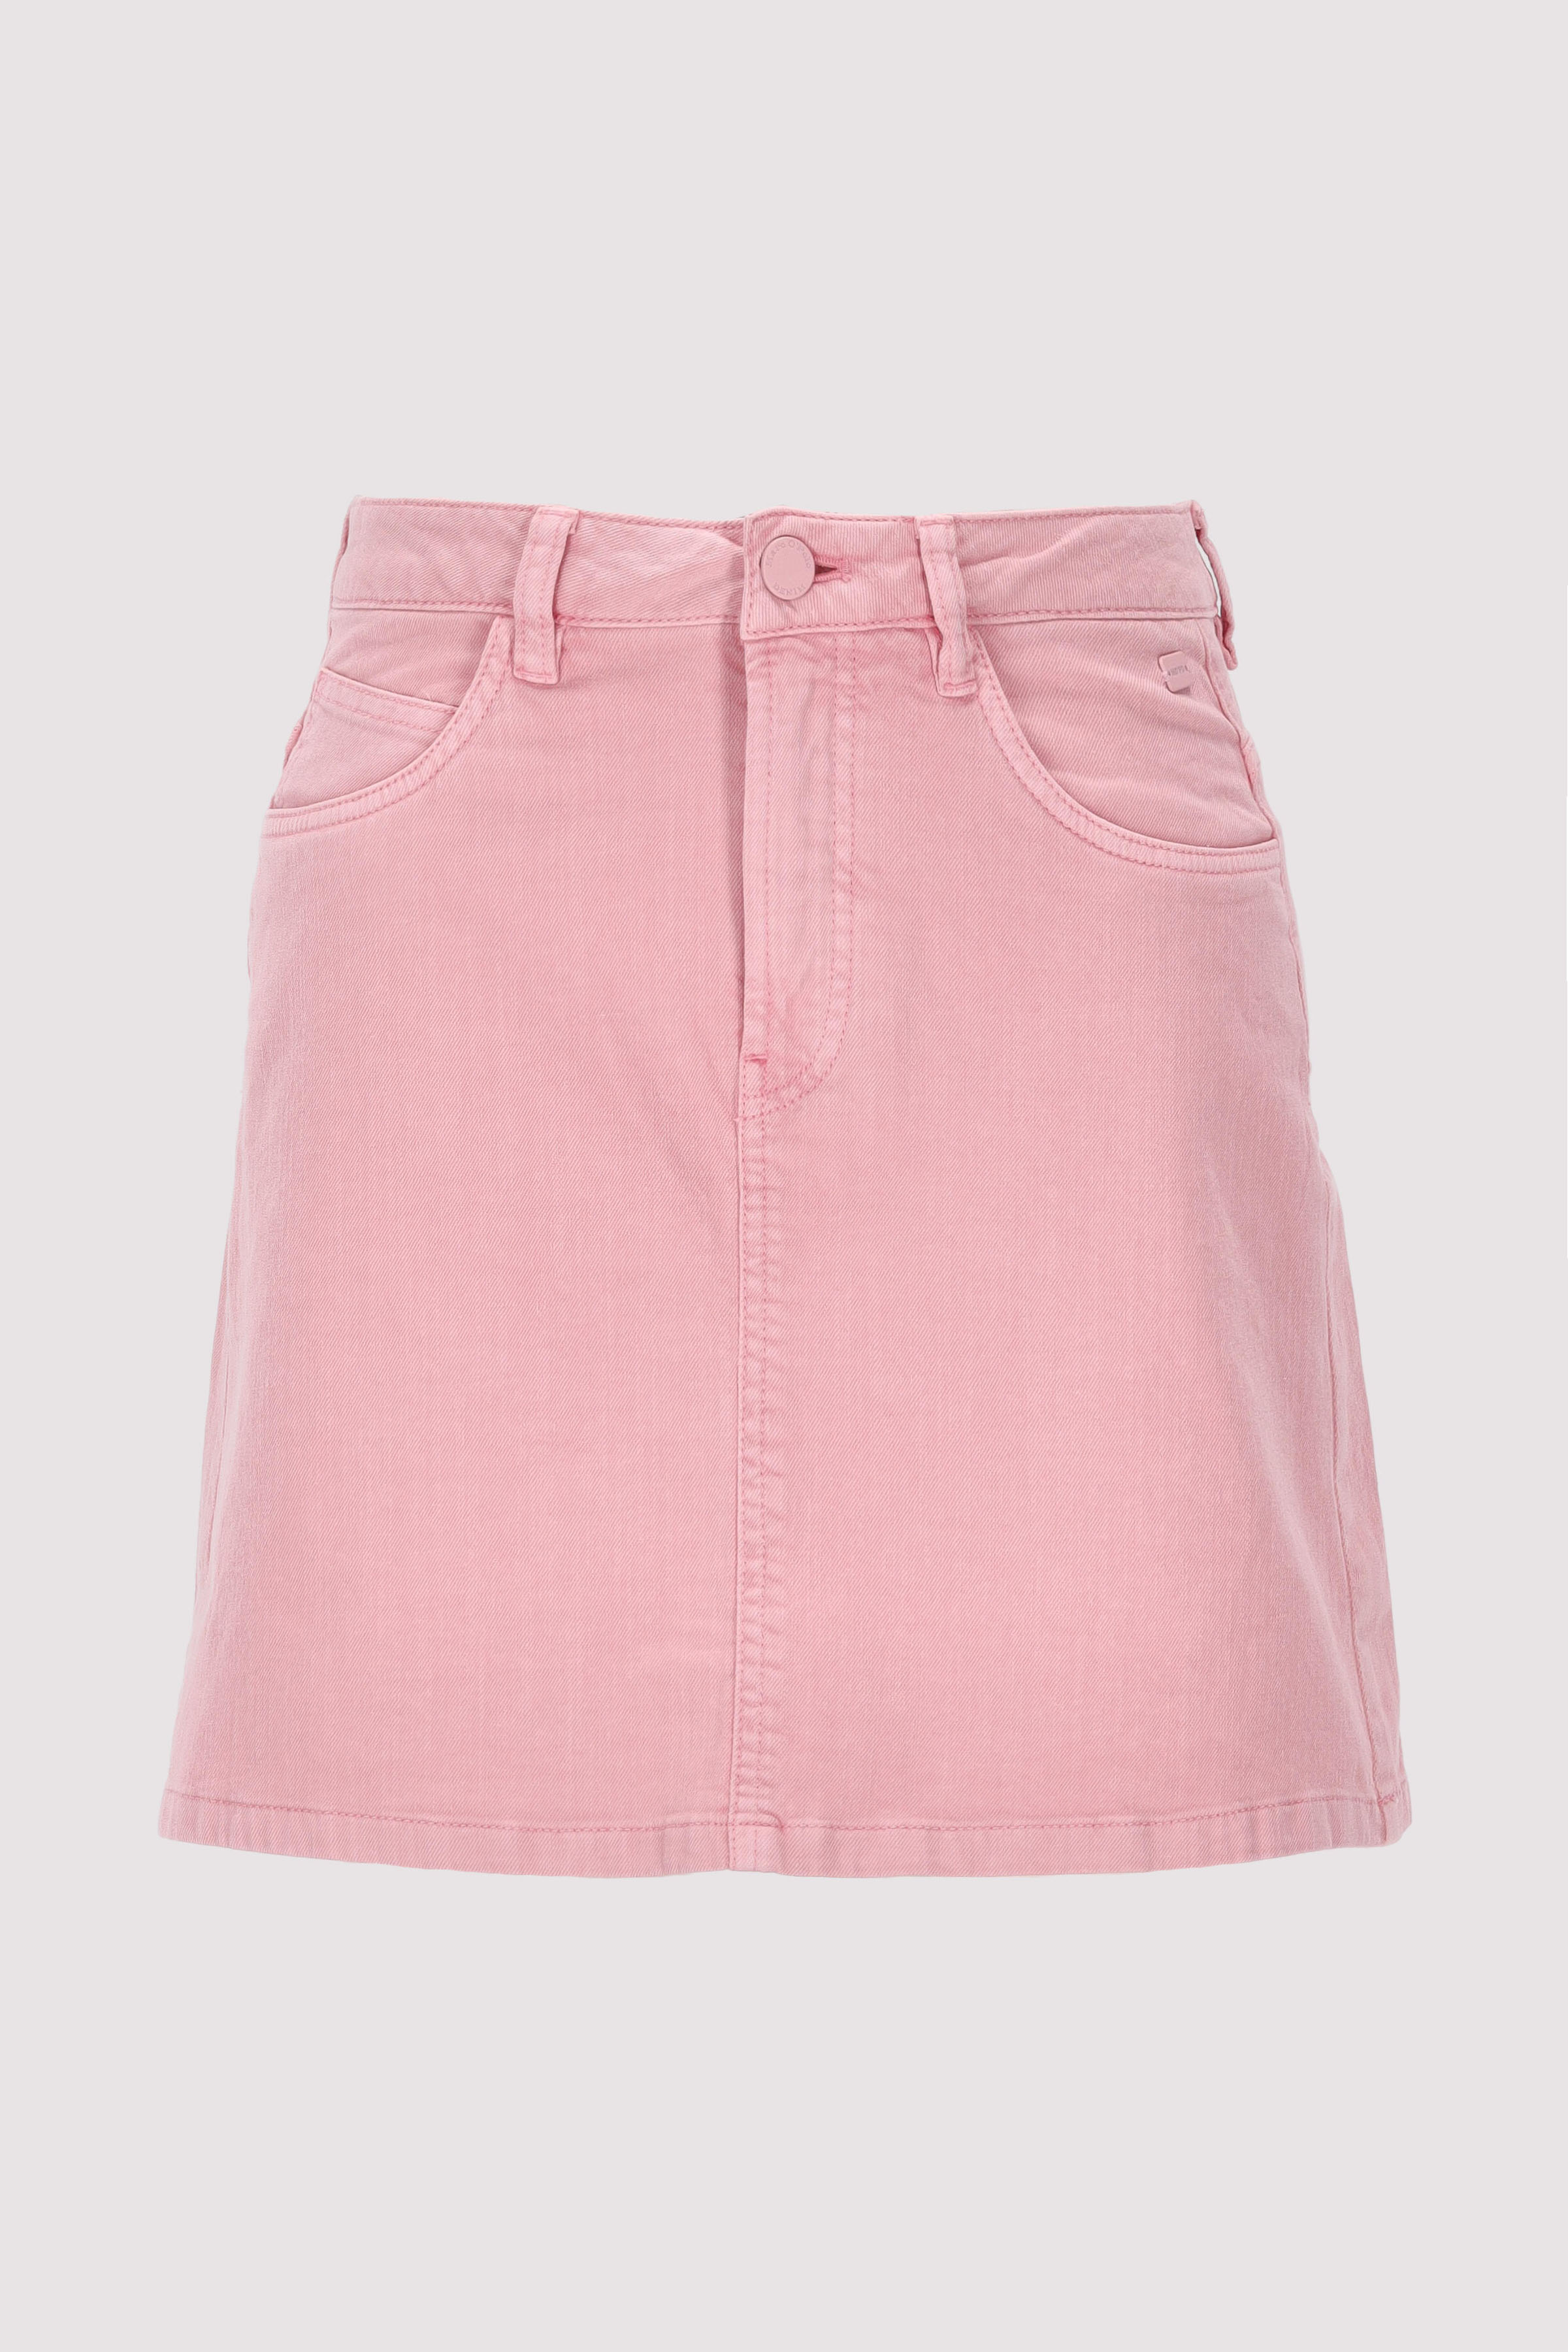 Skirt,regular waist, 5 pockets